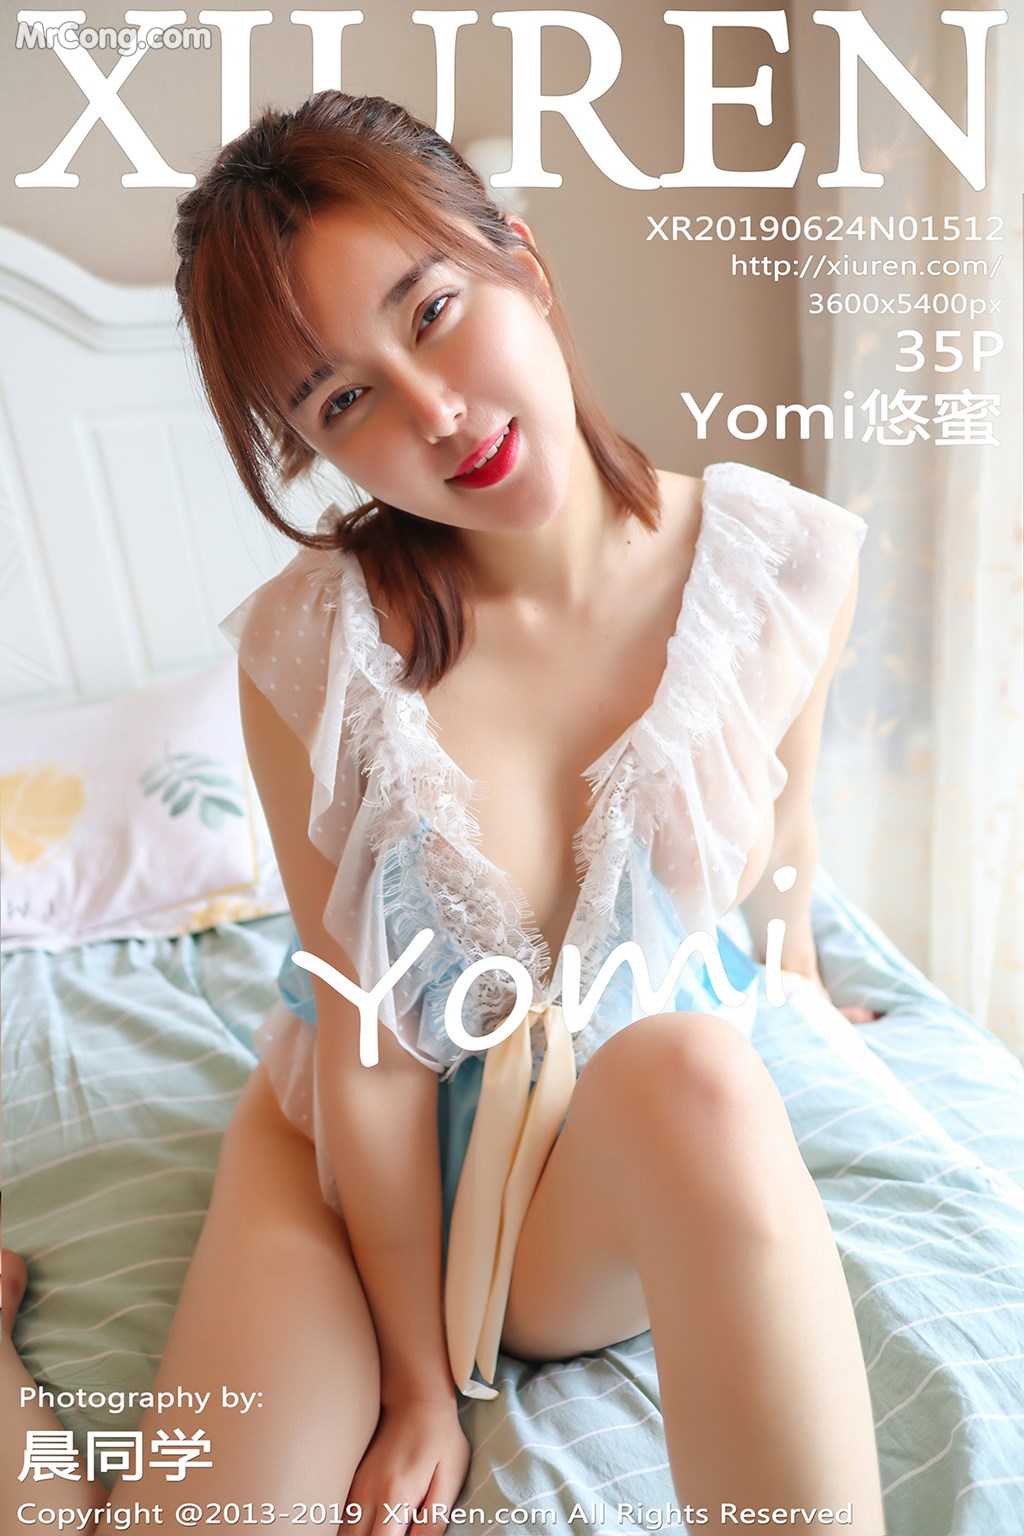 XIUREN No. 1512: Yomi 悠 蜜 (36 pictures)